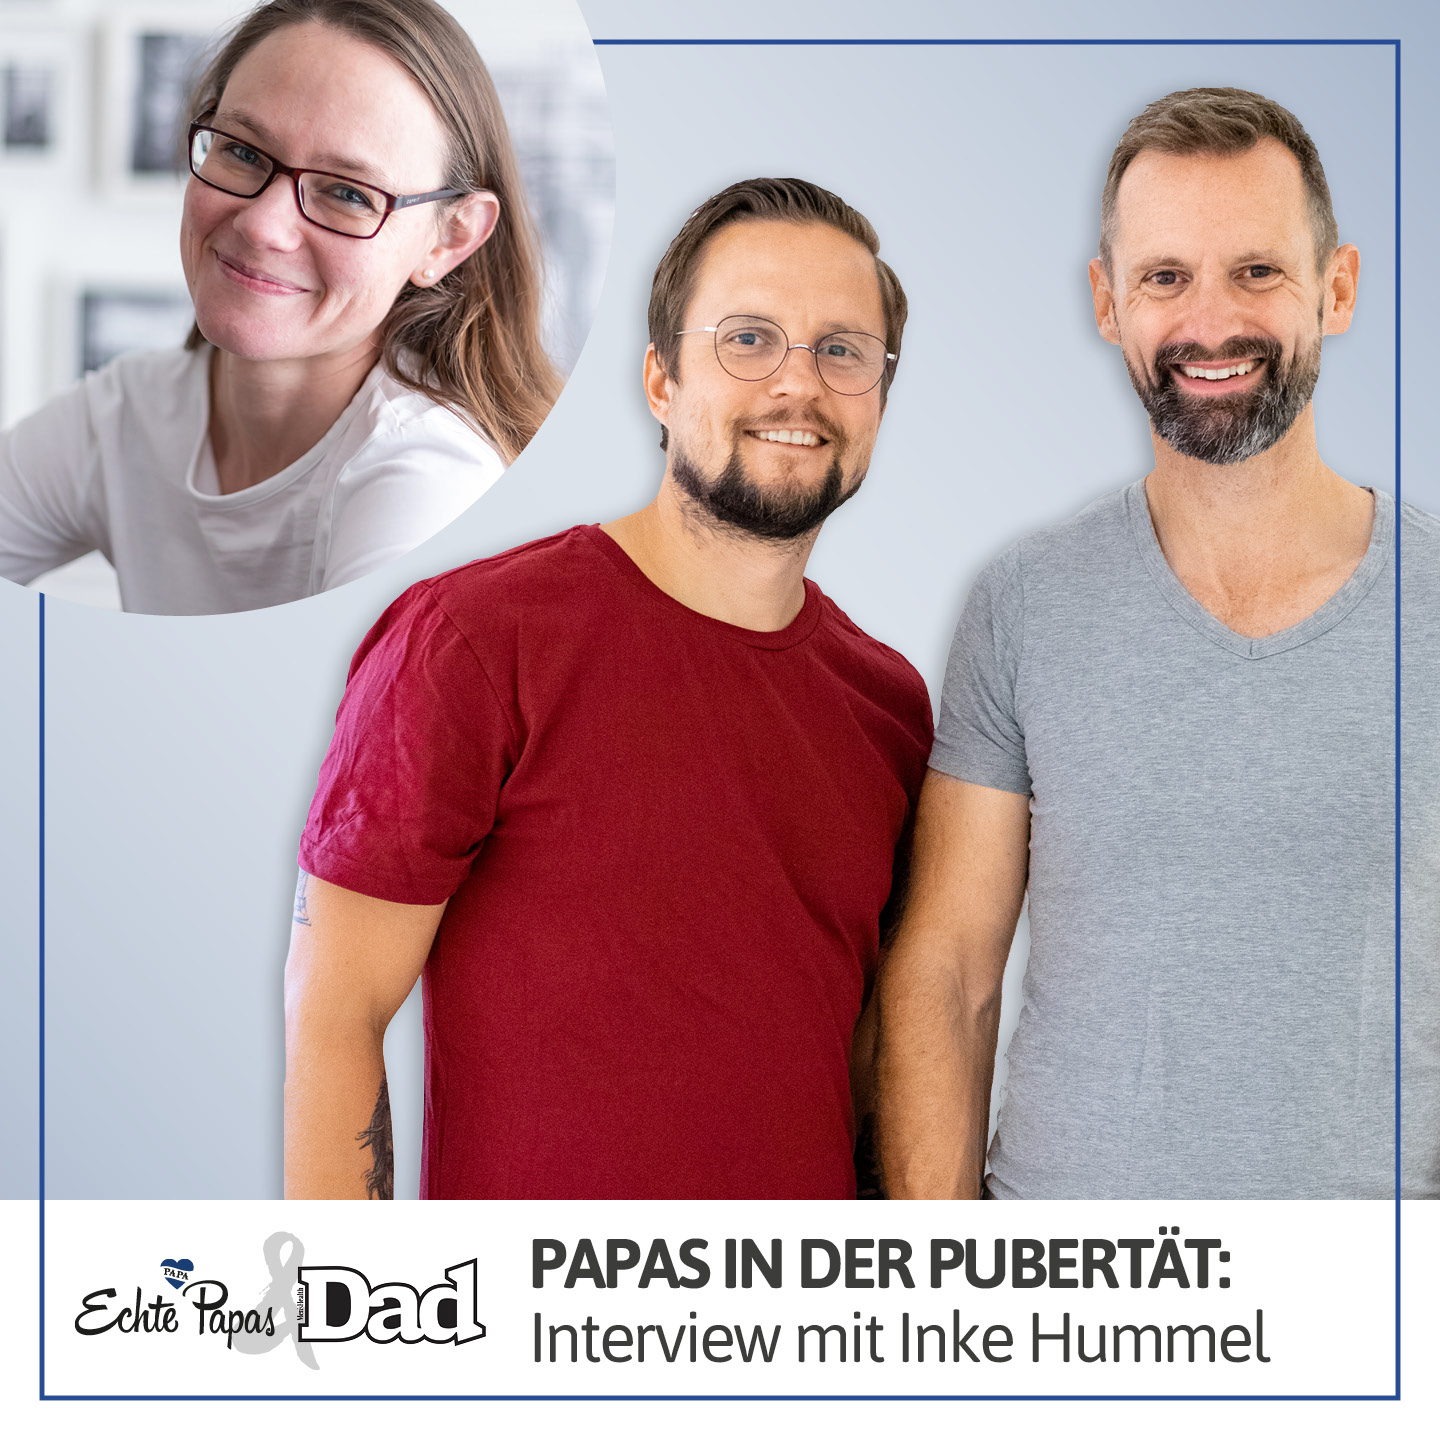 Papas in der Pubertät: Interview mit Inke Hummel